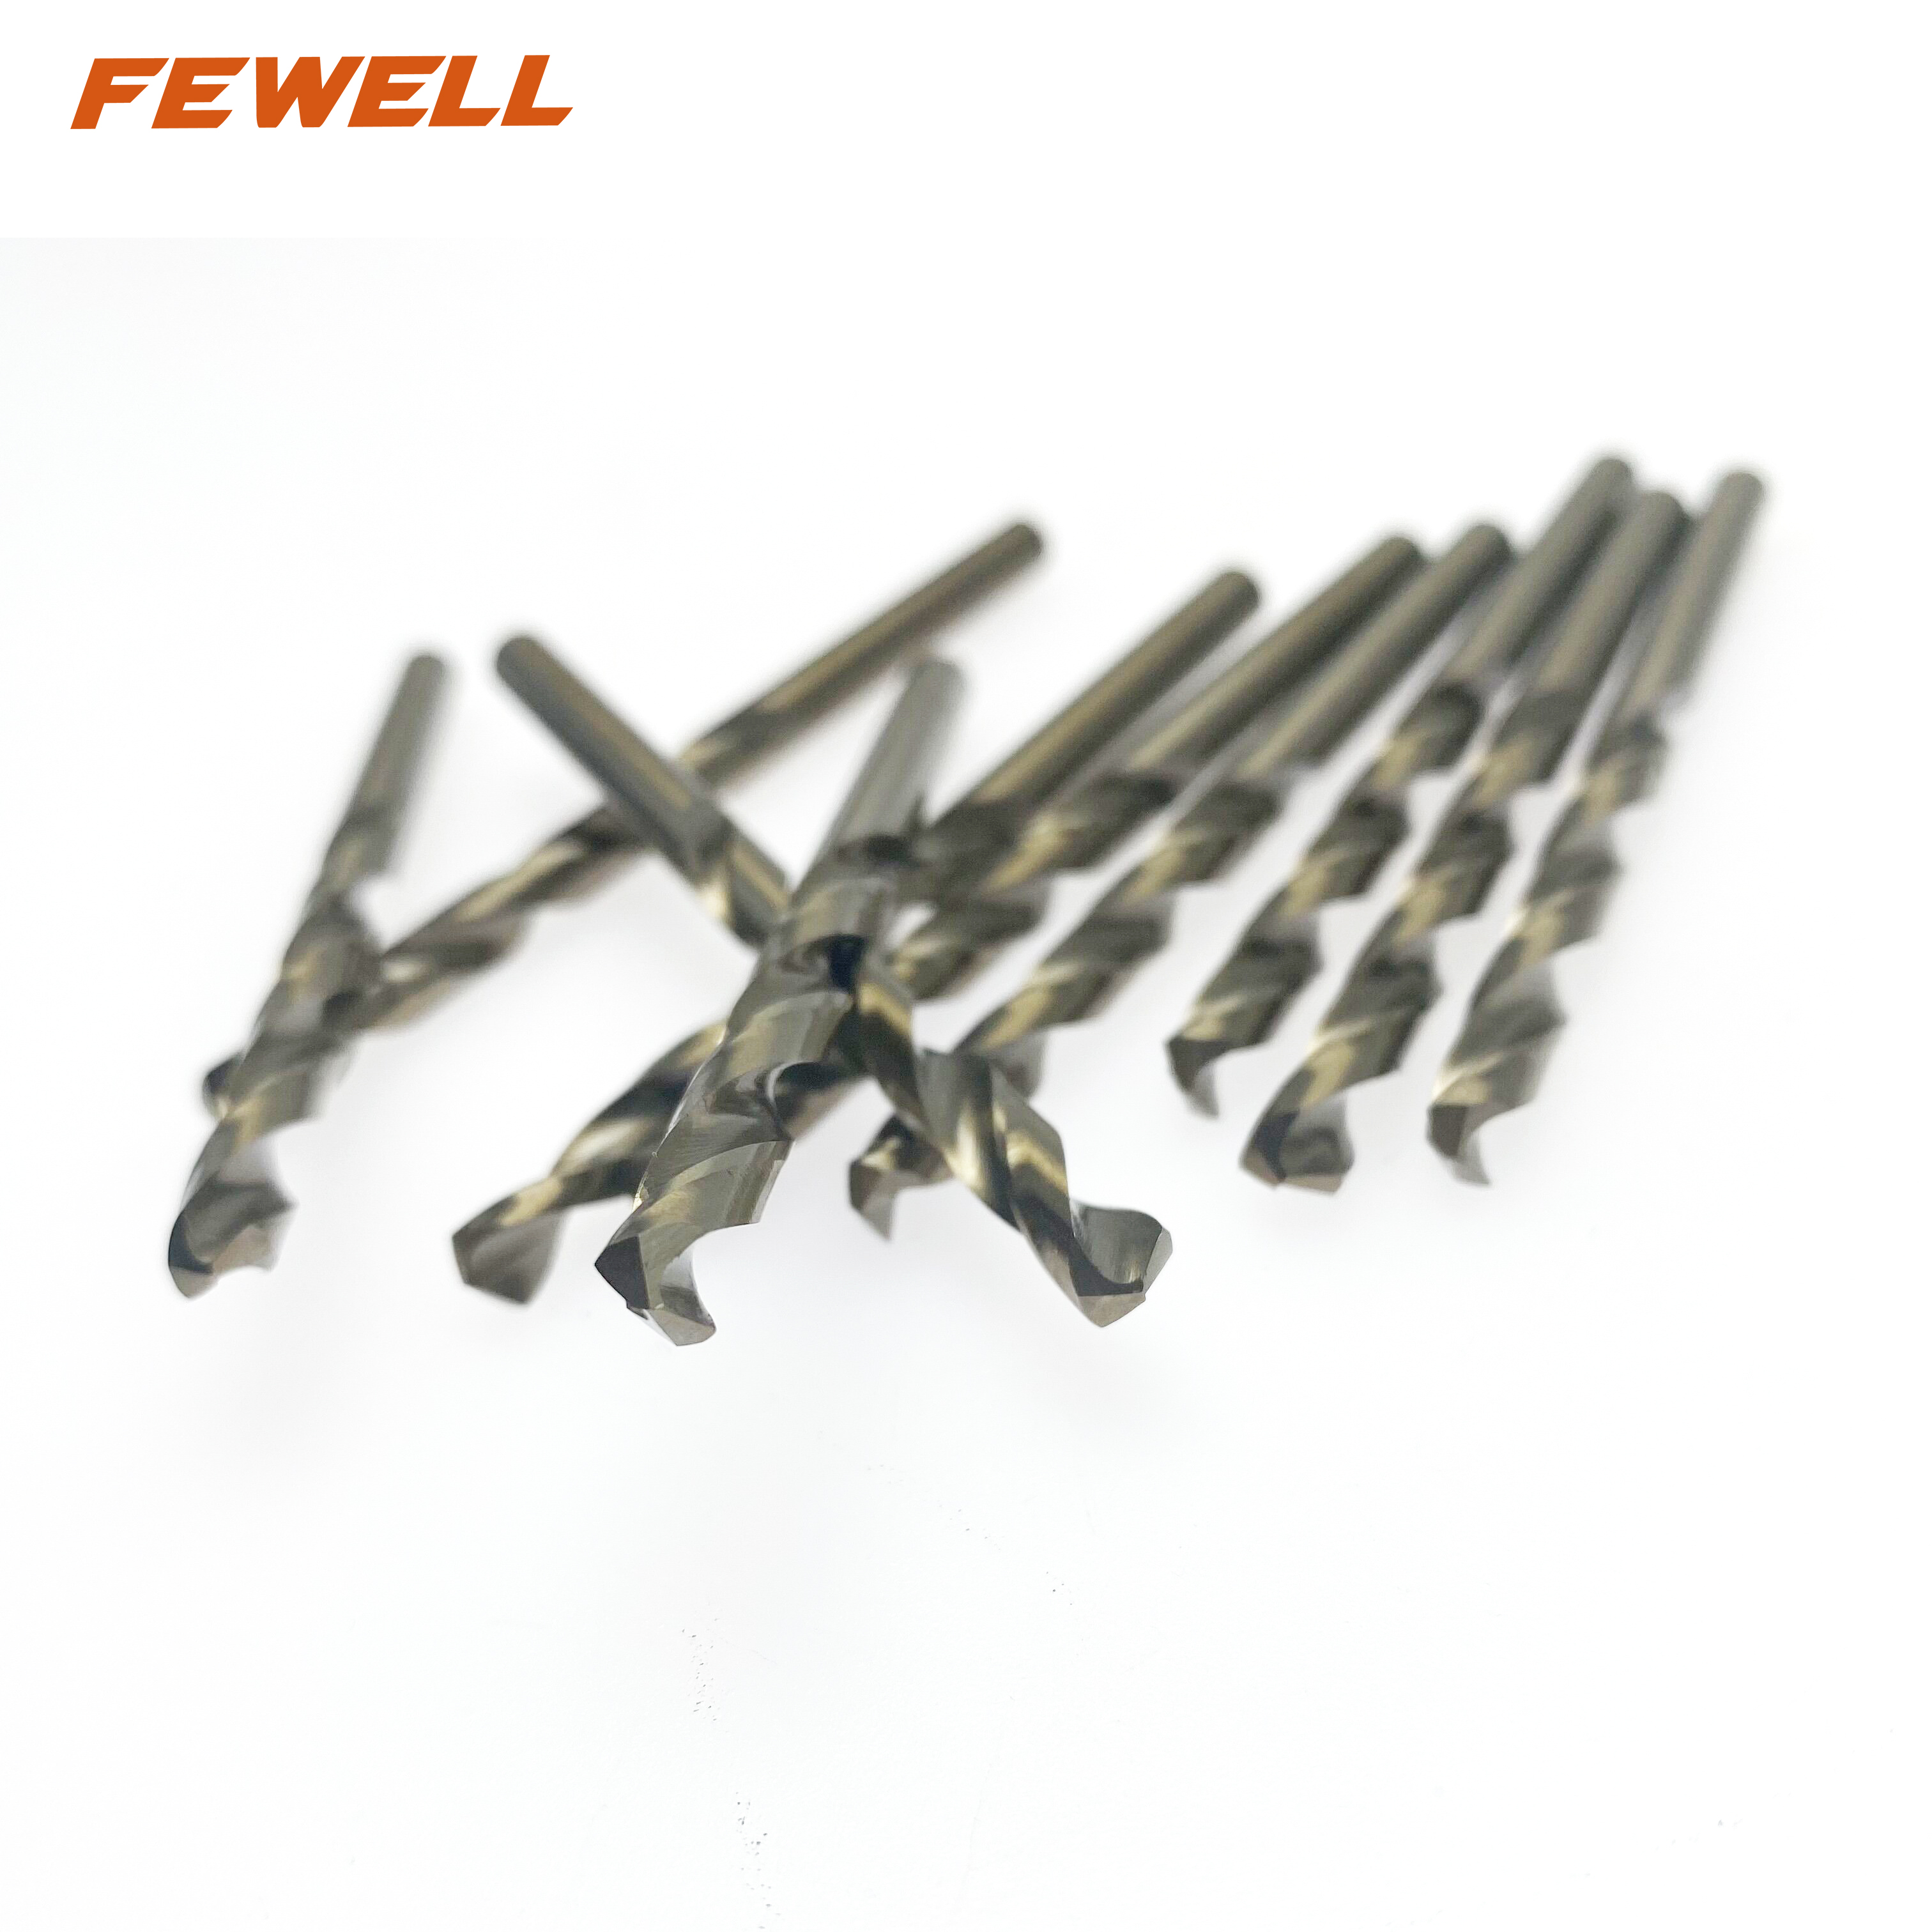 Brocas helicoidales de acero de alta velocidad M2 6542 HSS de 5,2 mm para taladrar metal hierro aluminio